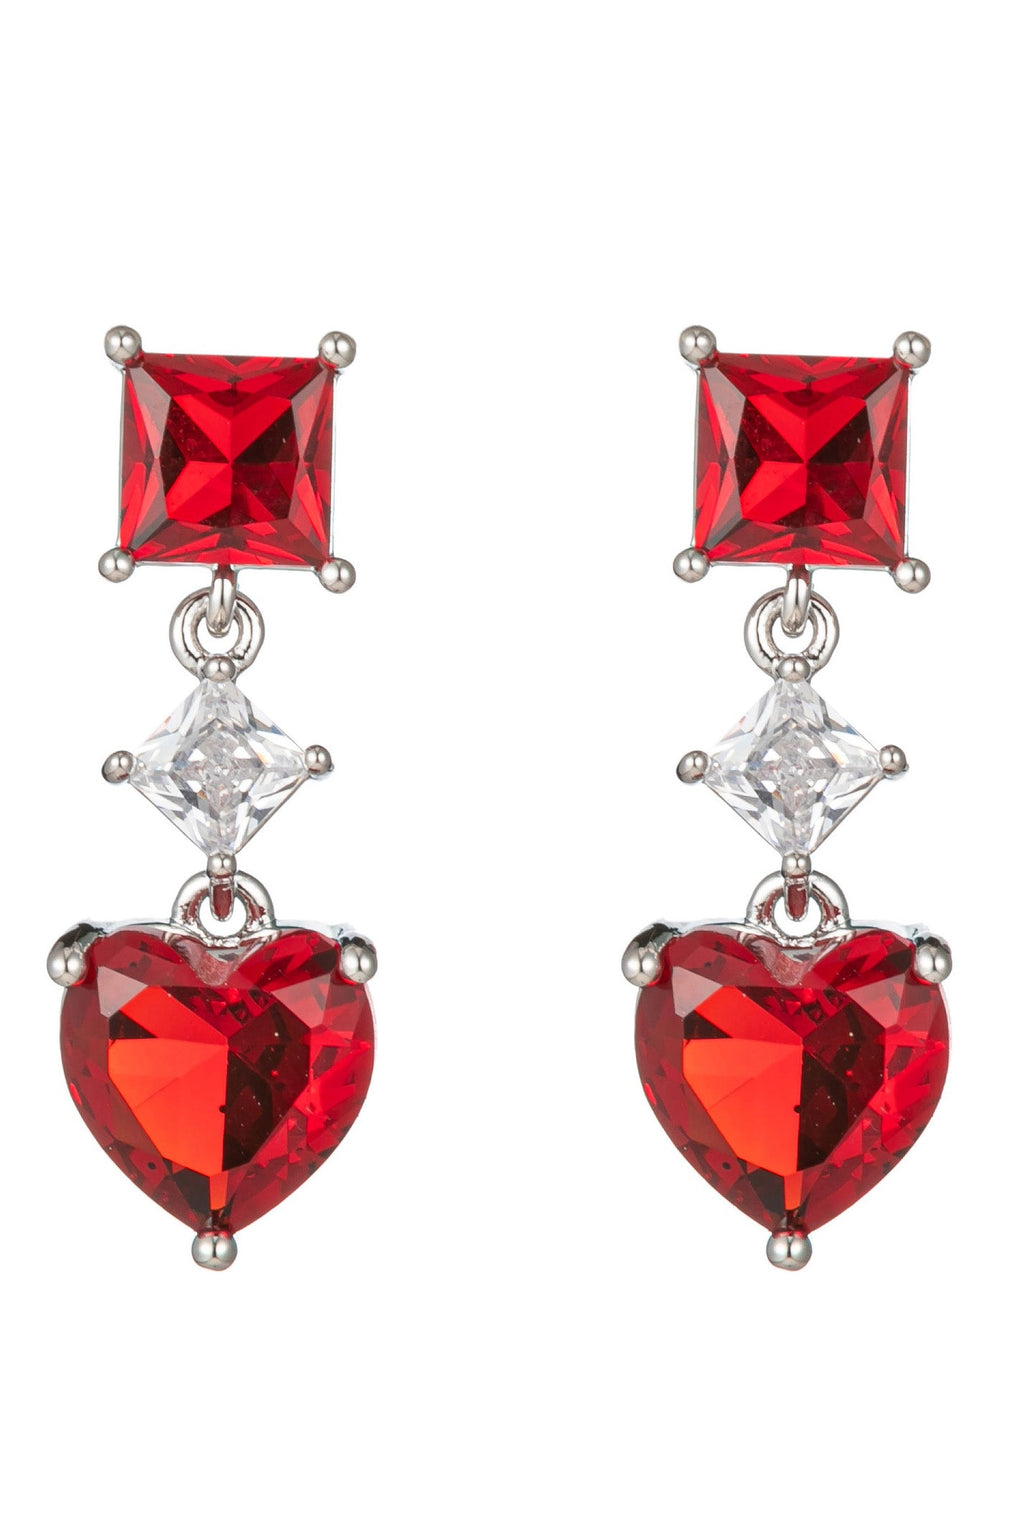 Red Heart Cubic Zirconia Drop Earrings: Wear Your Heart on Your Ears, Radiate Love.